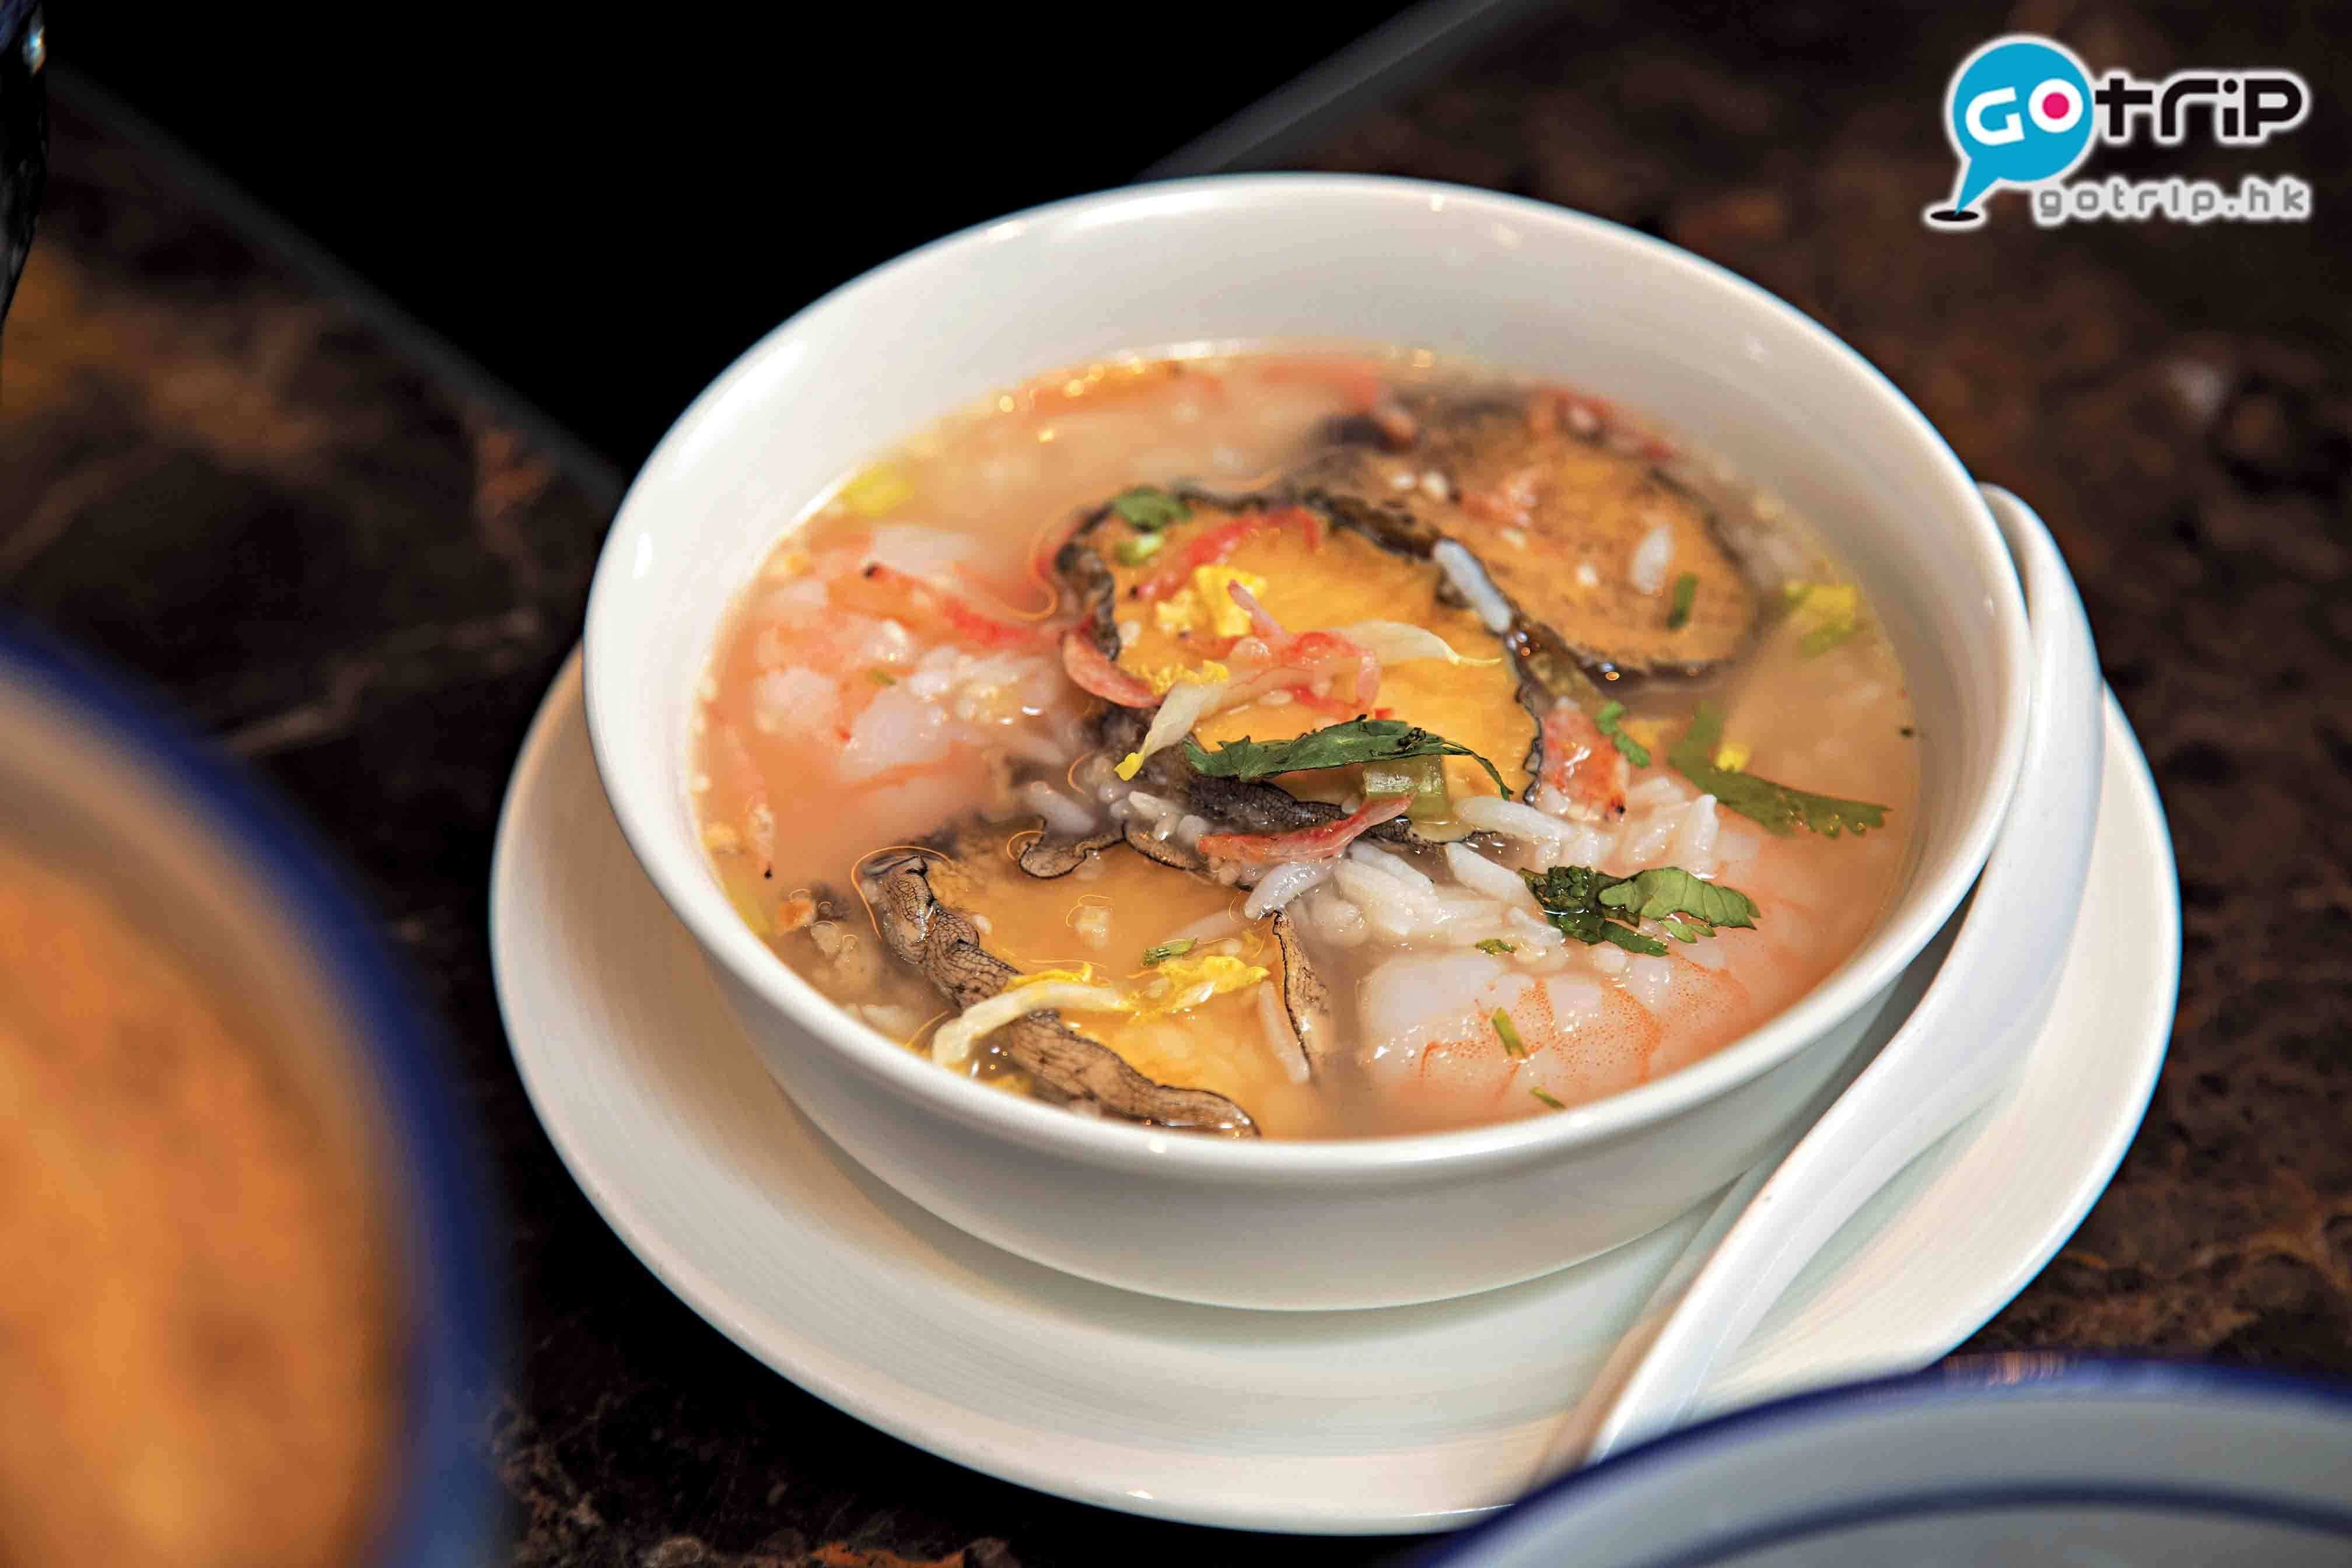 澳門自助餐2019 鮑魚海鮮泡飯，由大廚每天用3小時濃縮熬製，製作方面好講究，而且海鮮分量十足！